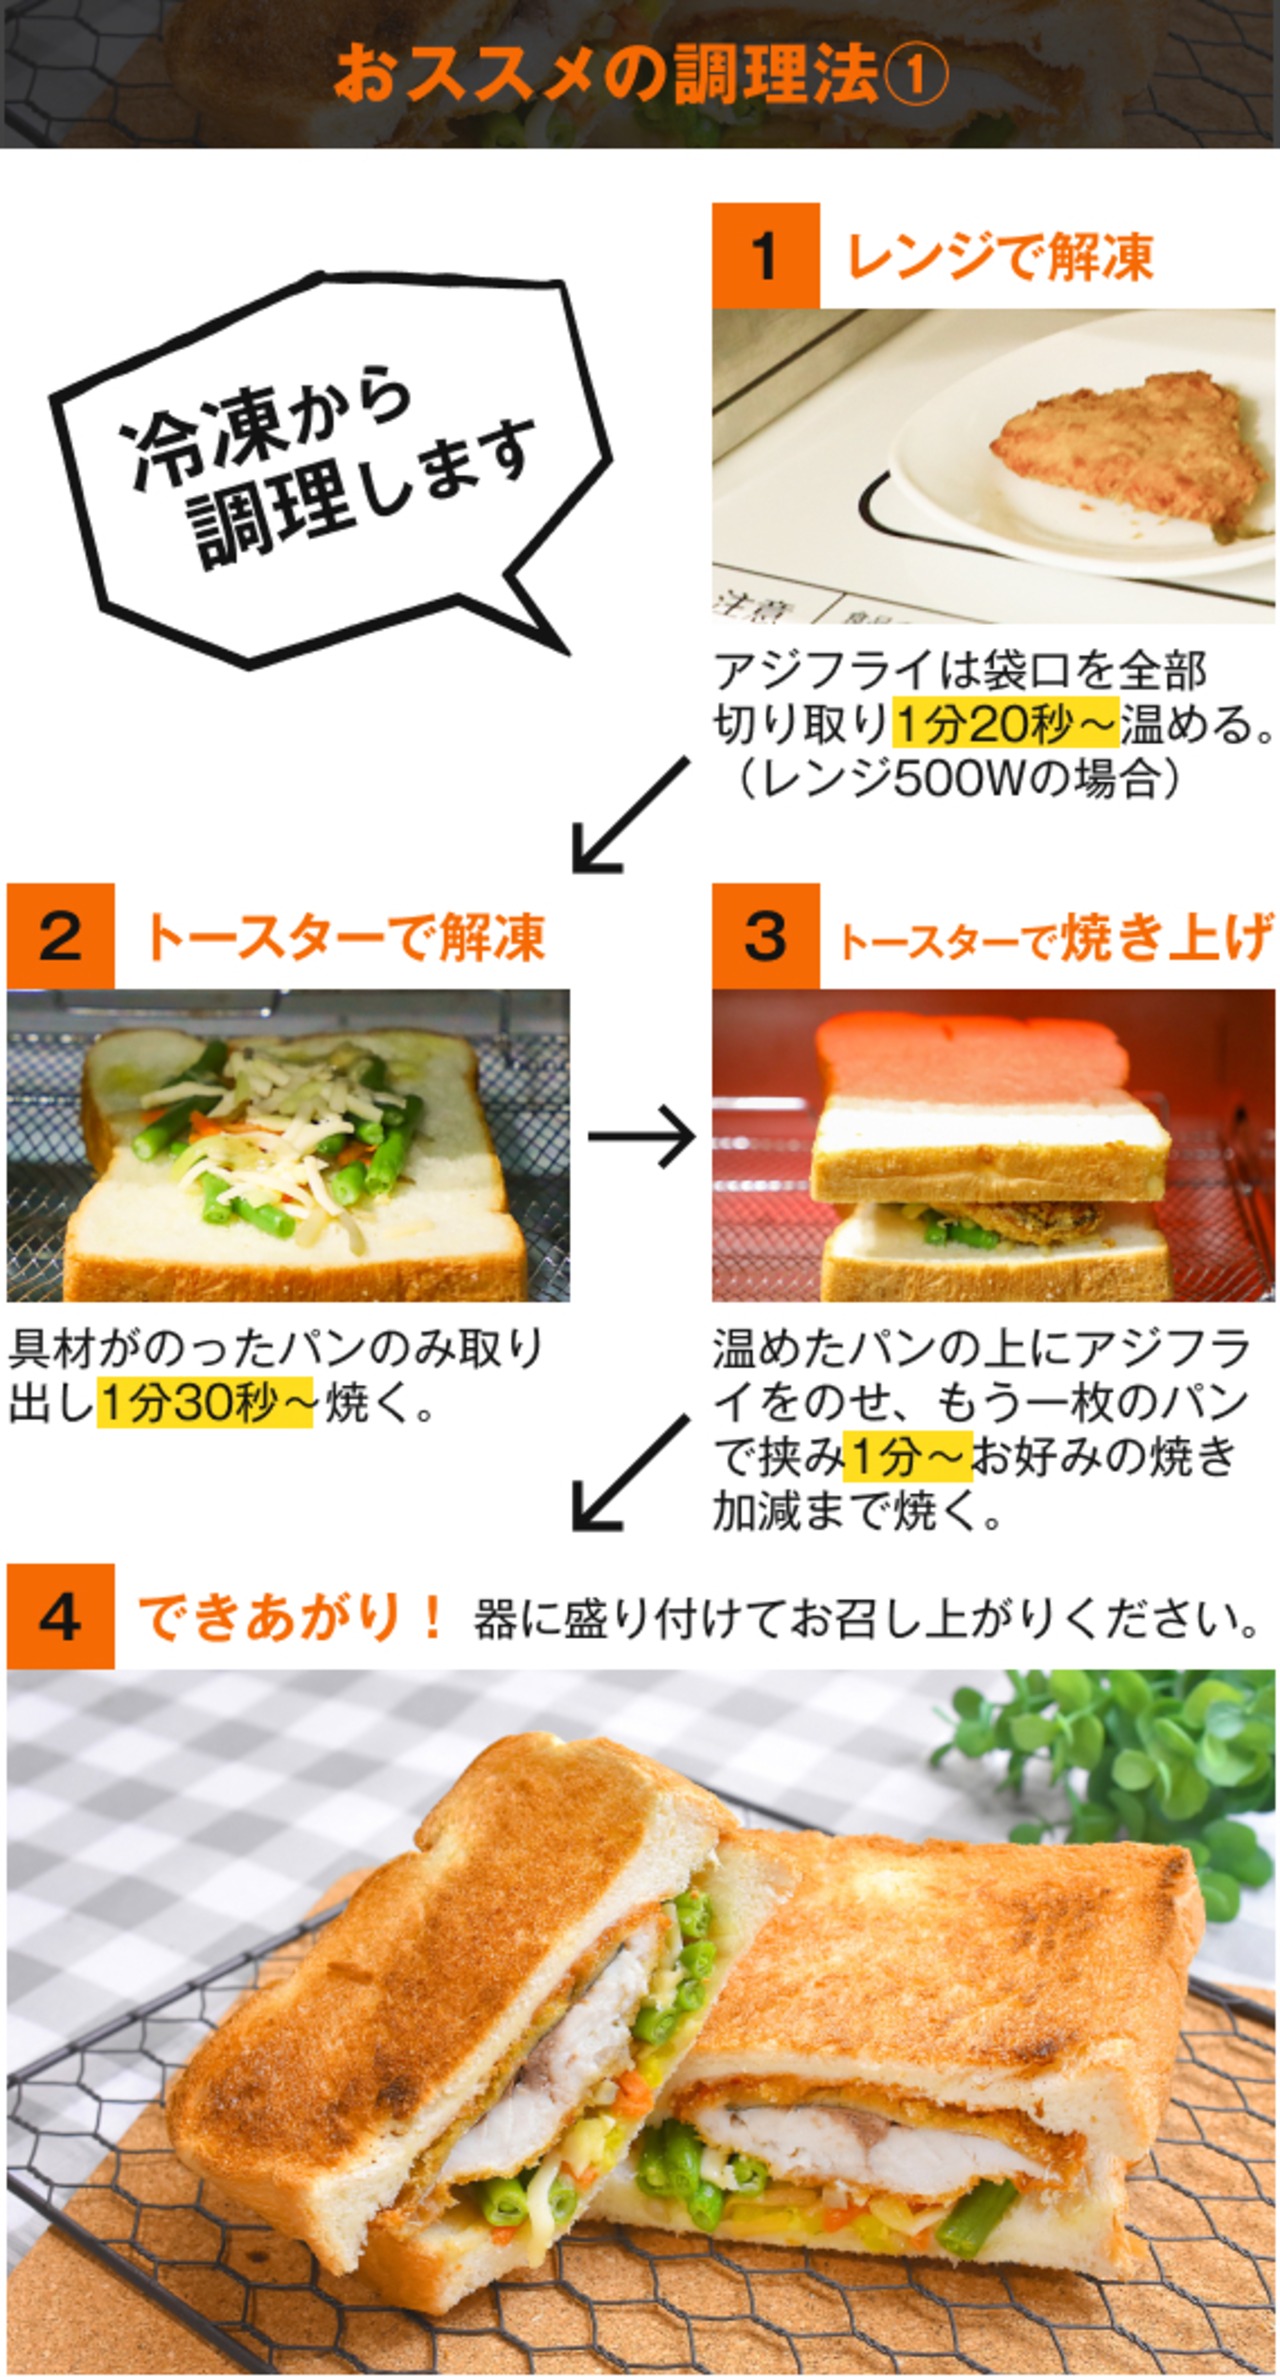 【冷凍食品】松浦アジフライサンド しゃっきり野菜